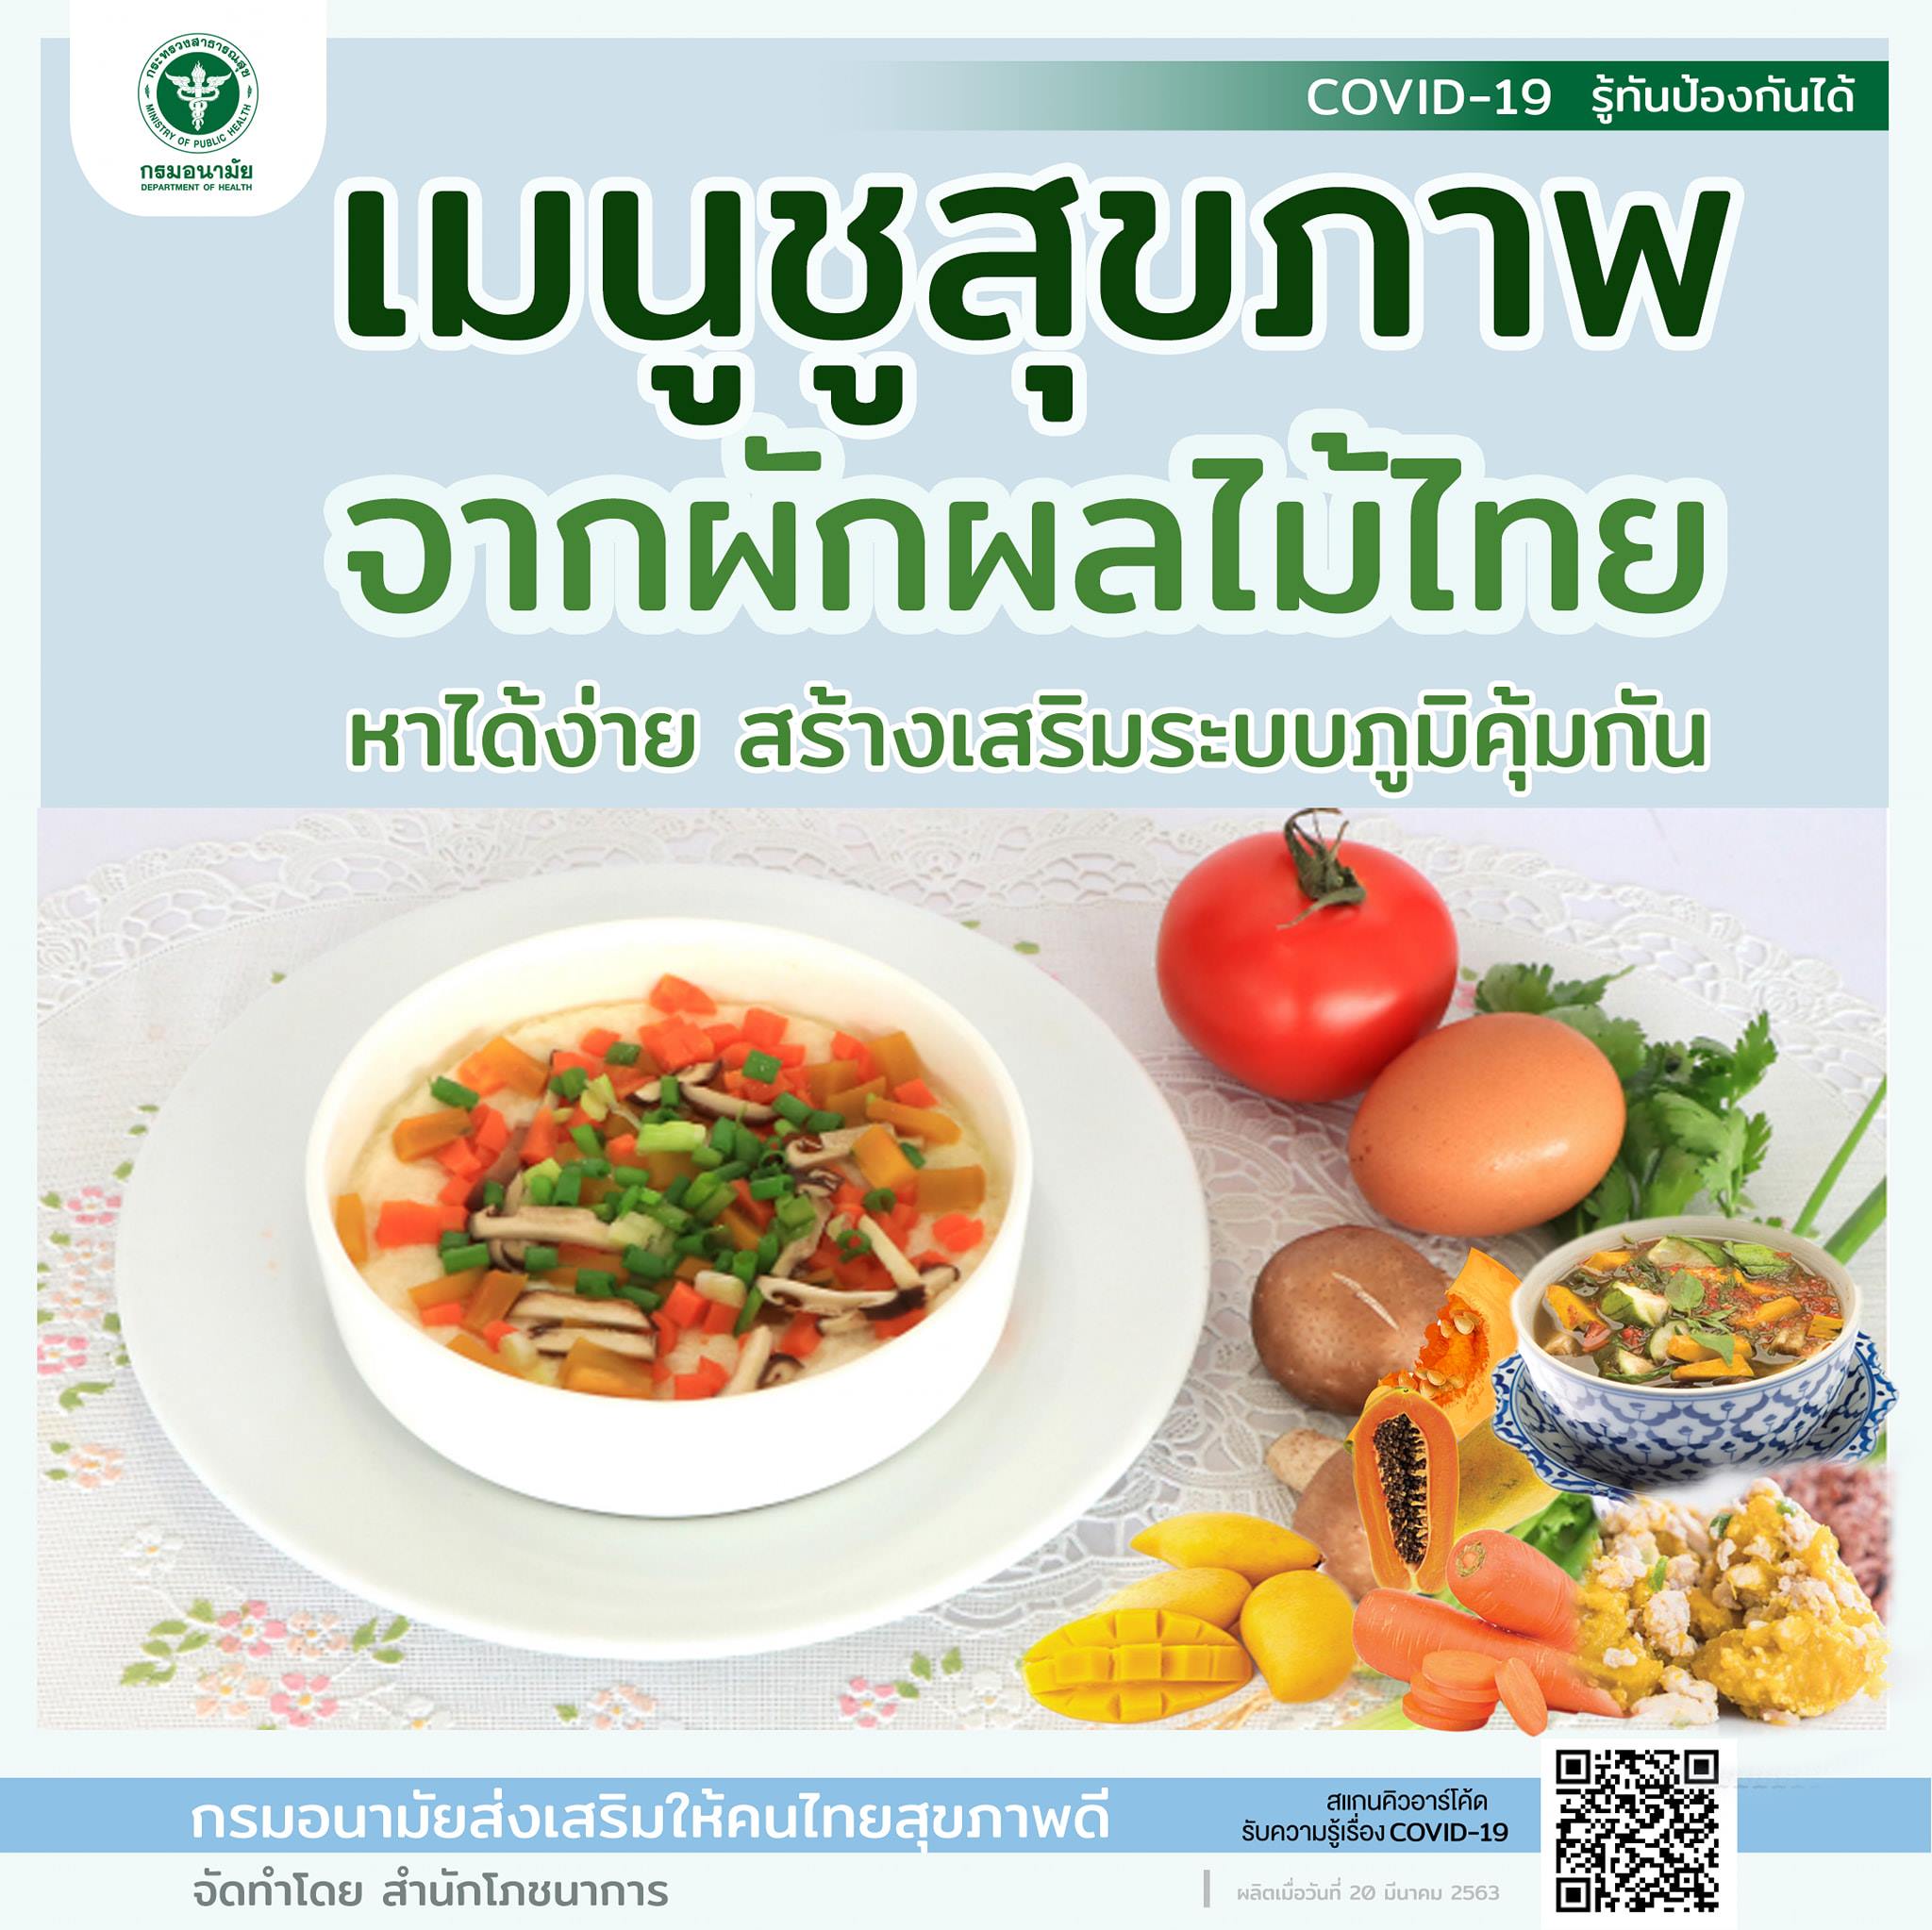 เมนูชูสุขภาพจากผักผลไม้ไทย หาได้ง่าย สร้างเสริมภูมิ